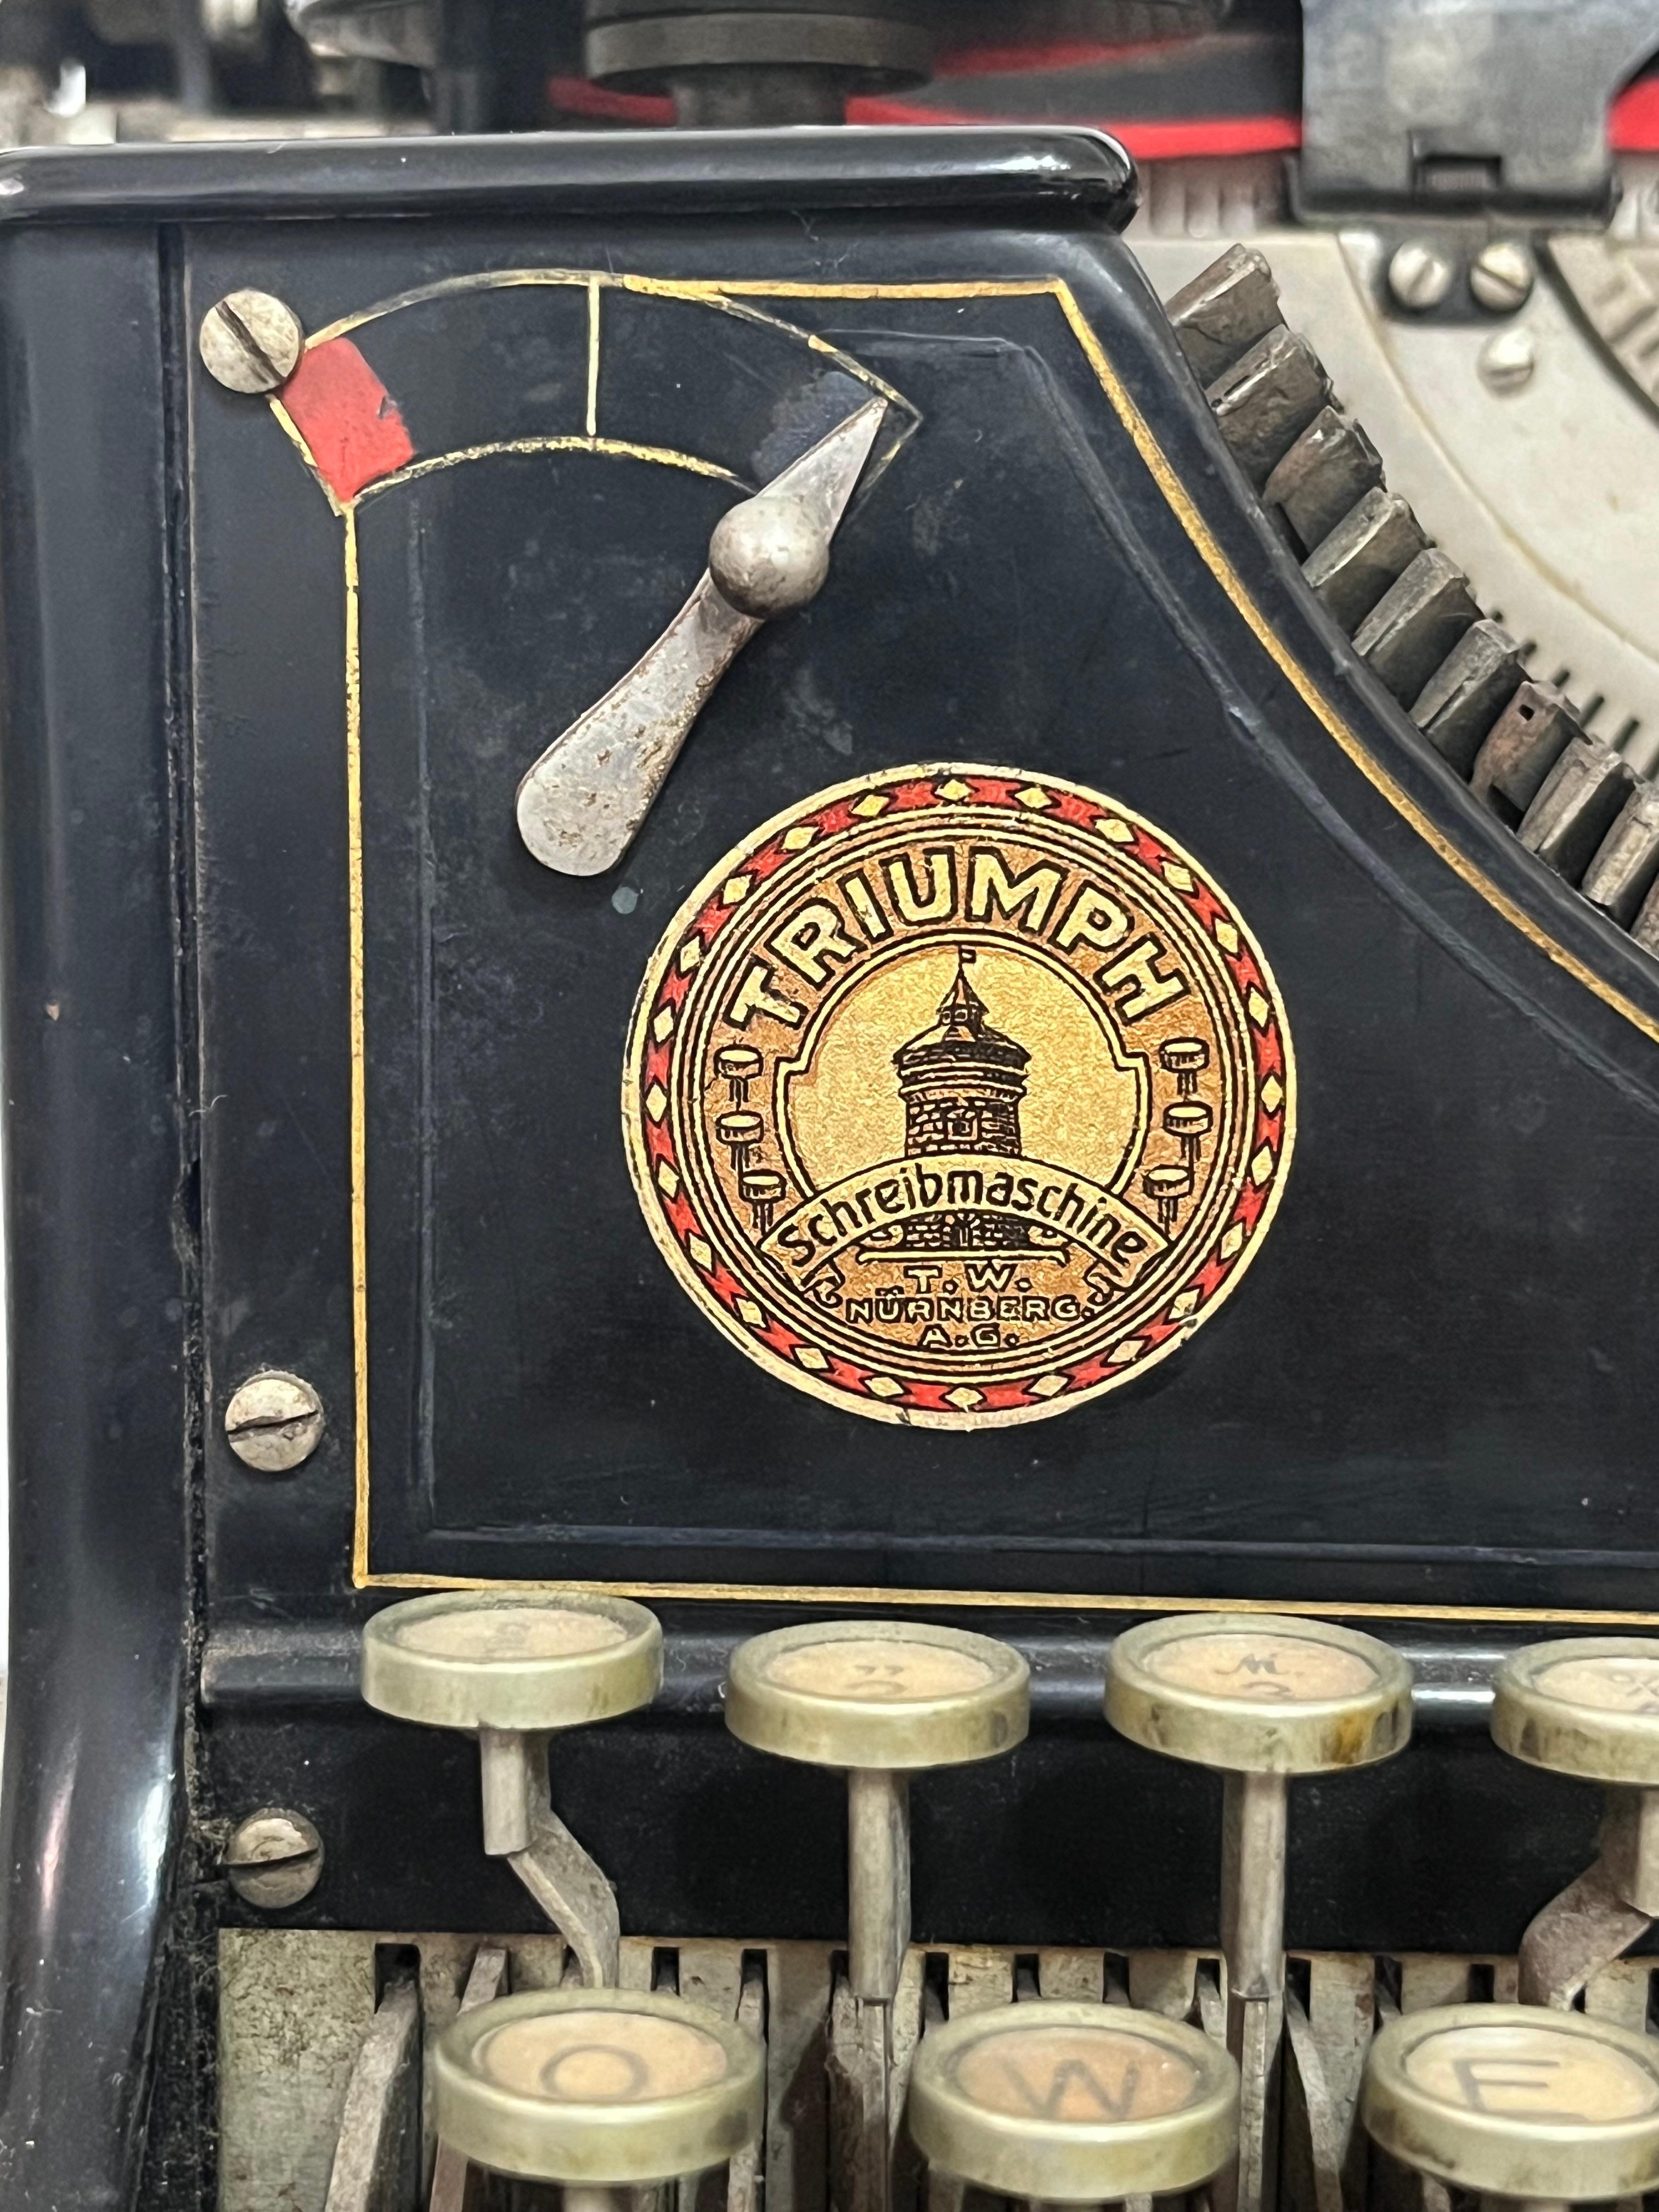 Triumph Schreibmaschine, Deutschland, 1930
Gefunden in einem Notariat, Anzeichen von Alterung.